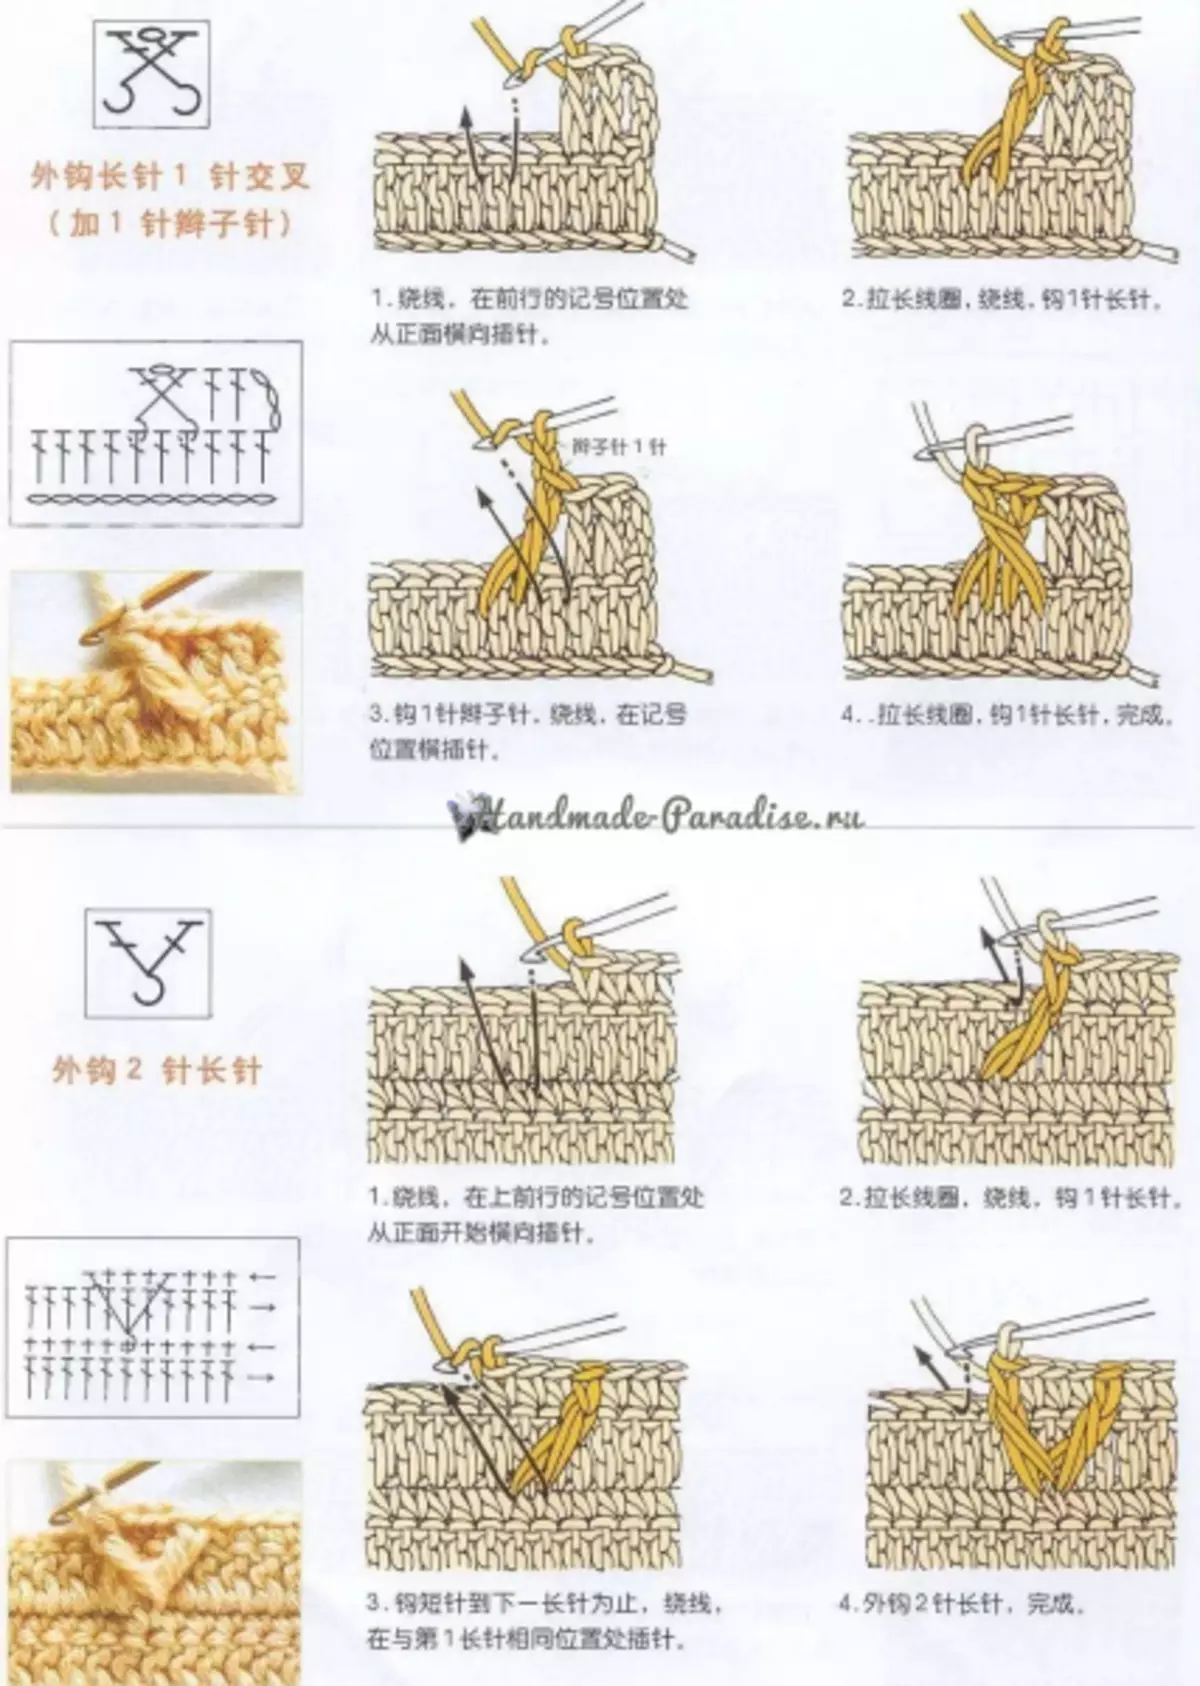 Cara merenda dalam skema Cina